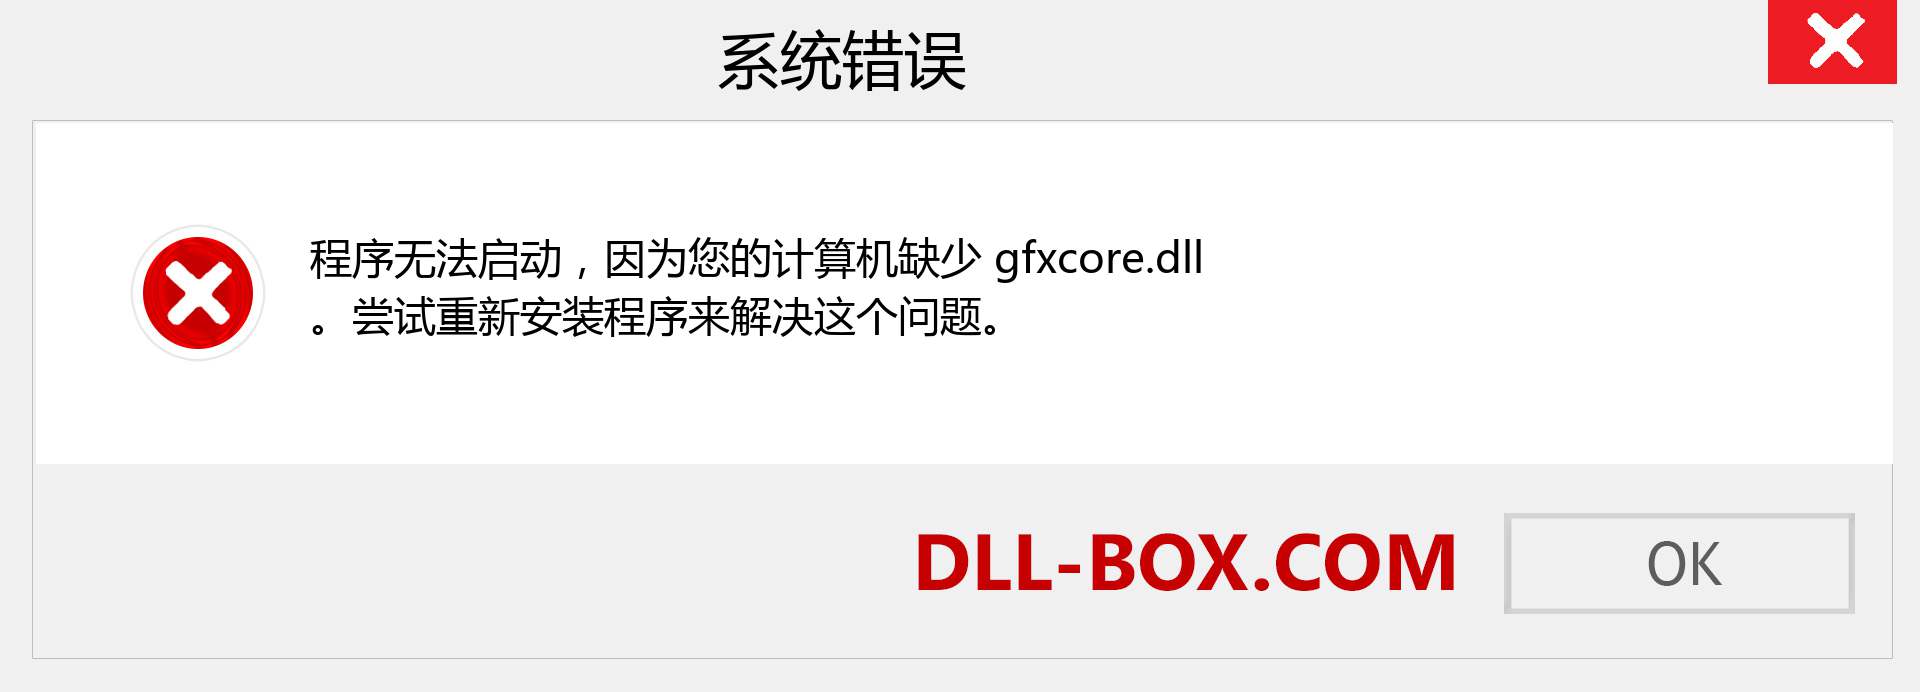 gfxcore.dll 文件丢失？。 适用于 Windows 7、8、10 的下载 - 修复 Windows、照片、图像上的 gfxcore dll 丢失错误